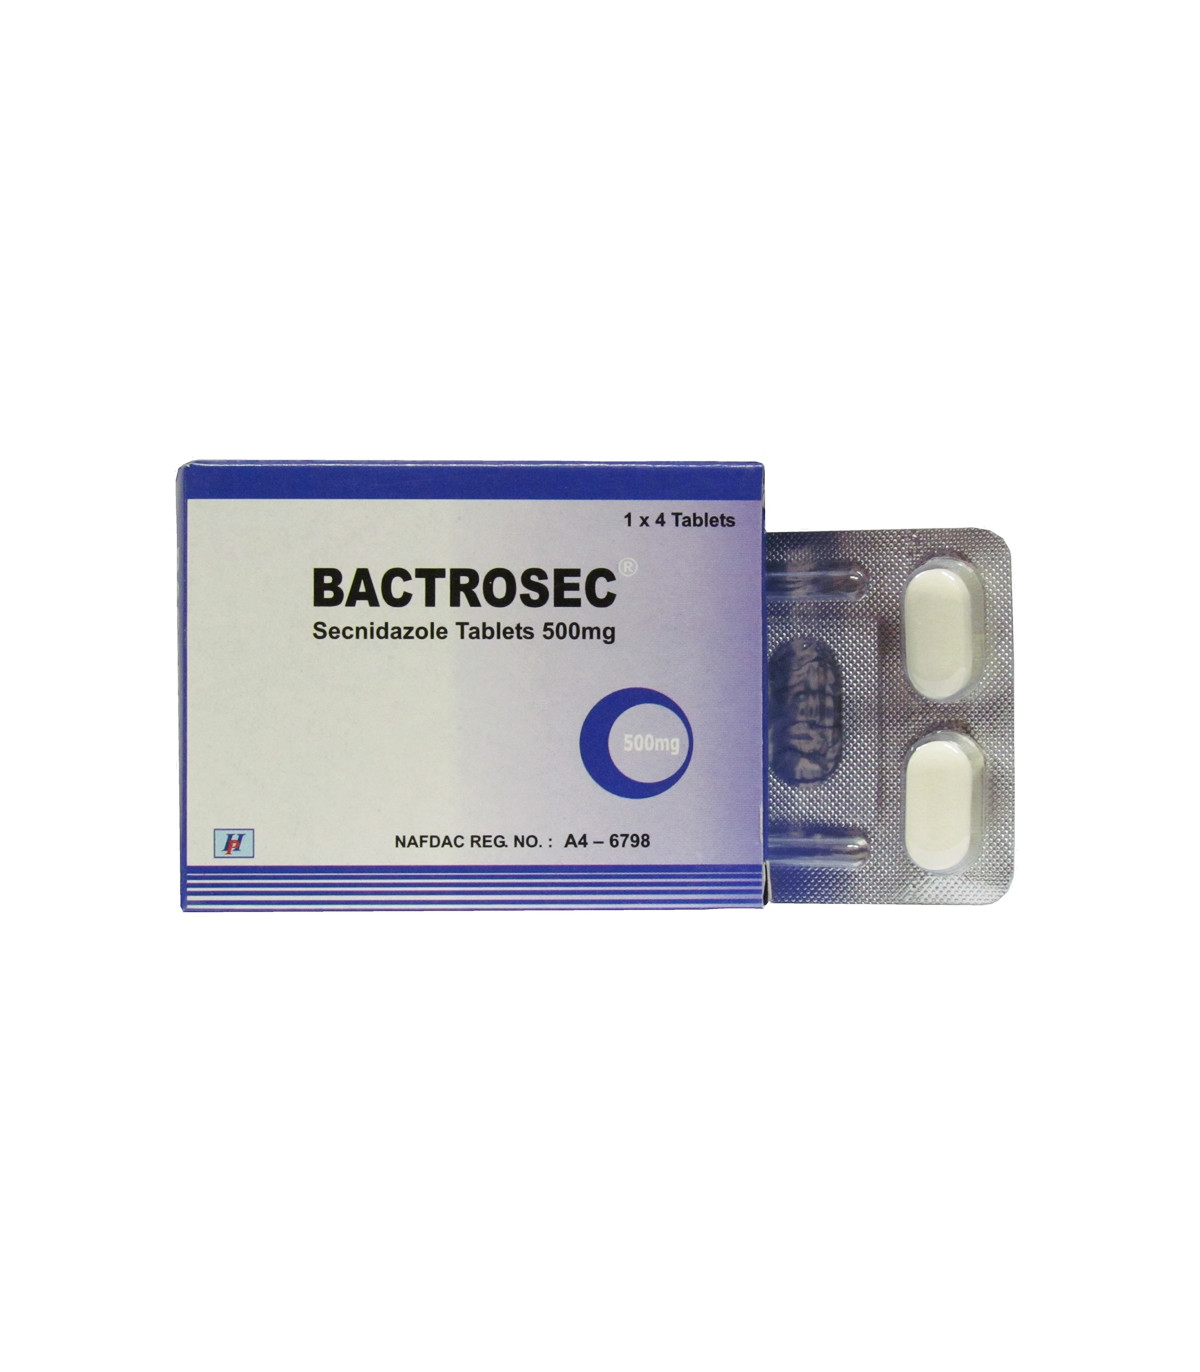 Bactrosec 500mg - 4 Tablets